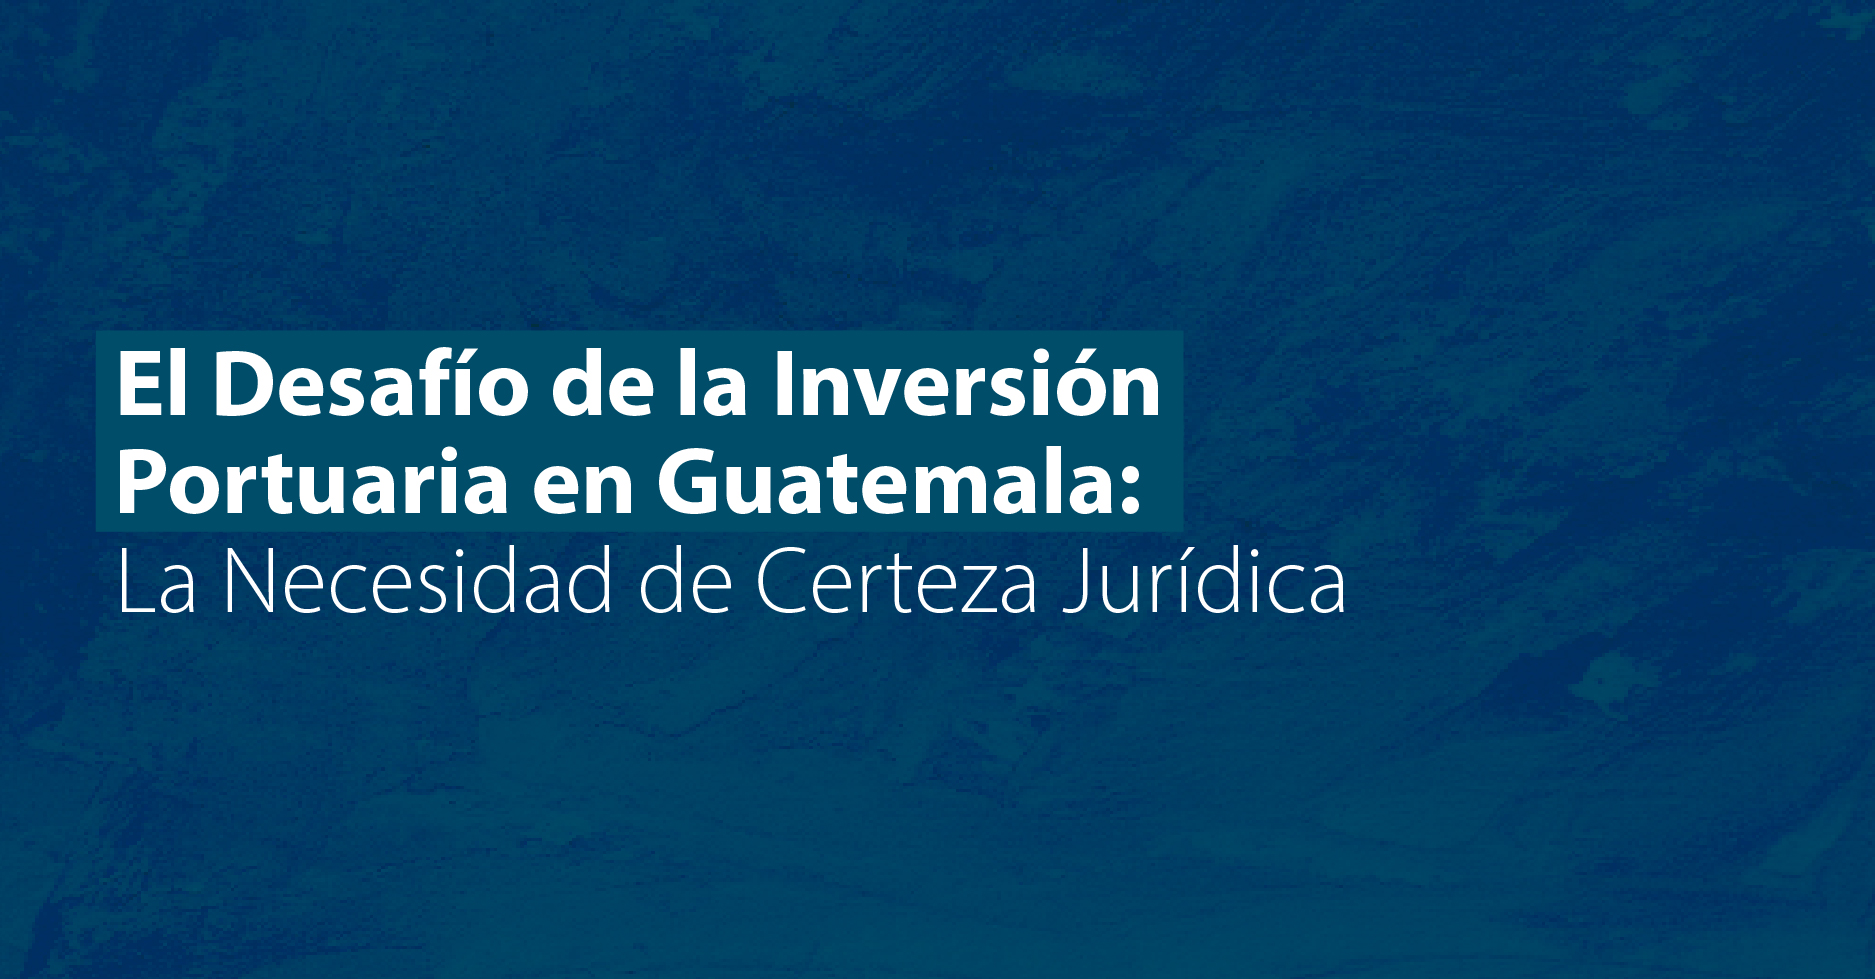 El Desafío de la Inversión Portuaria en Guatemala: La Necesidad de Certeza Jurídica